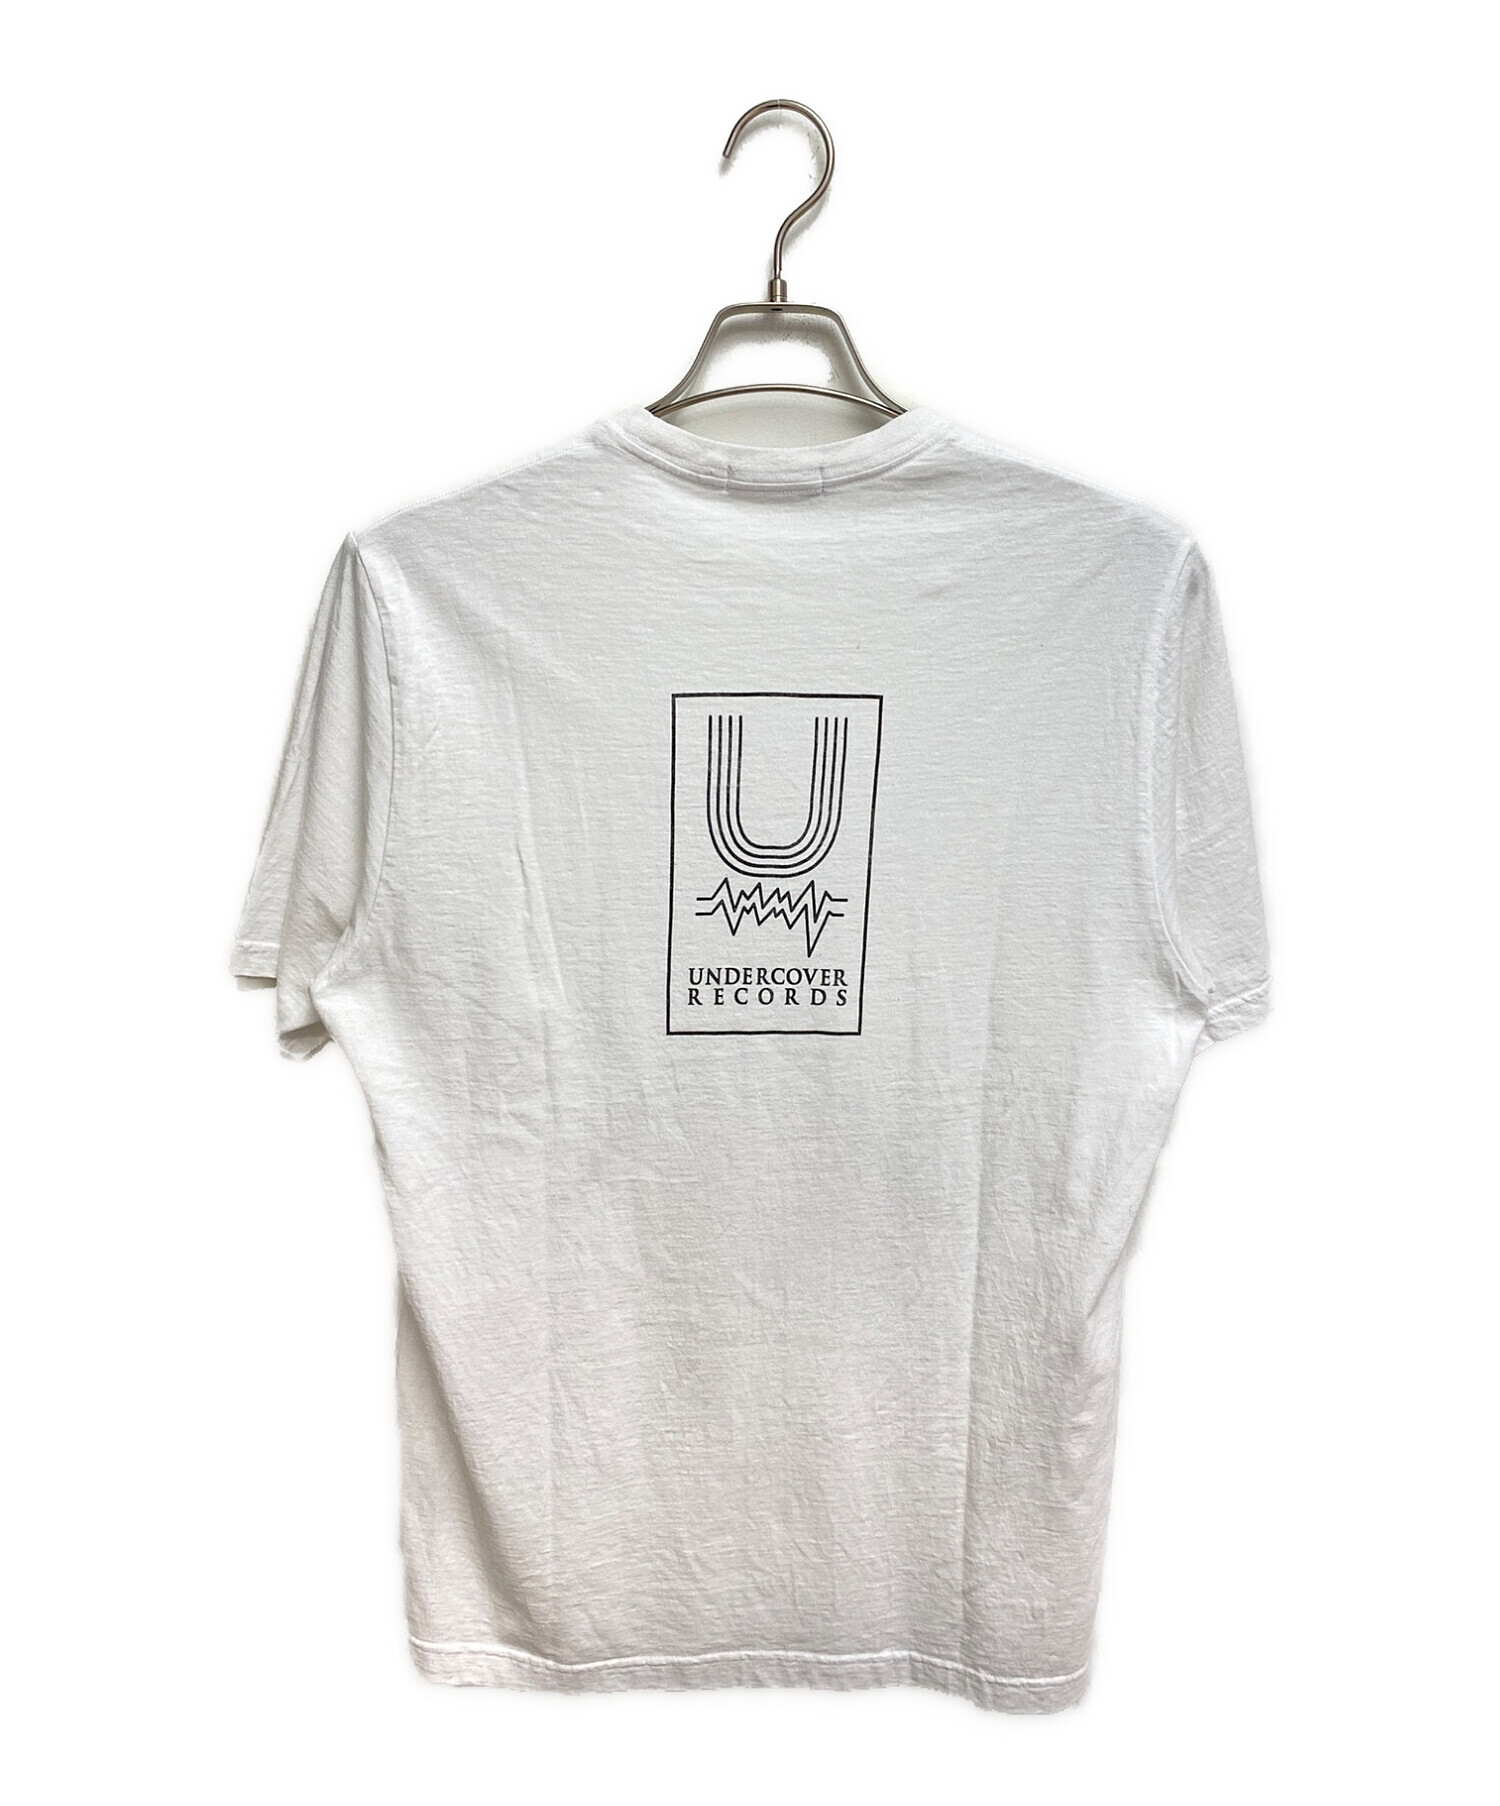 UNDERCOVERISM (アンダーカバーイズム) プリントTシャツ ホワイト サイズ:3